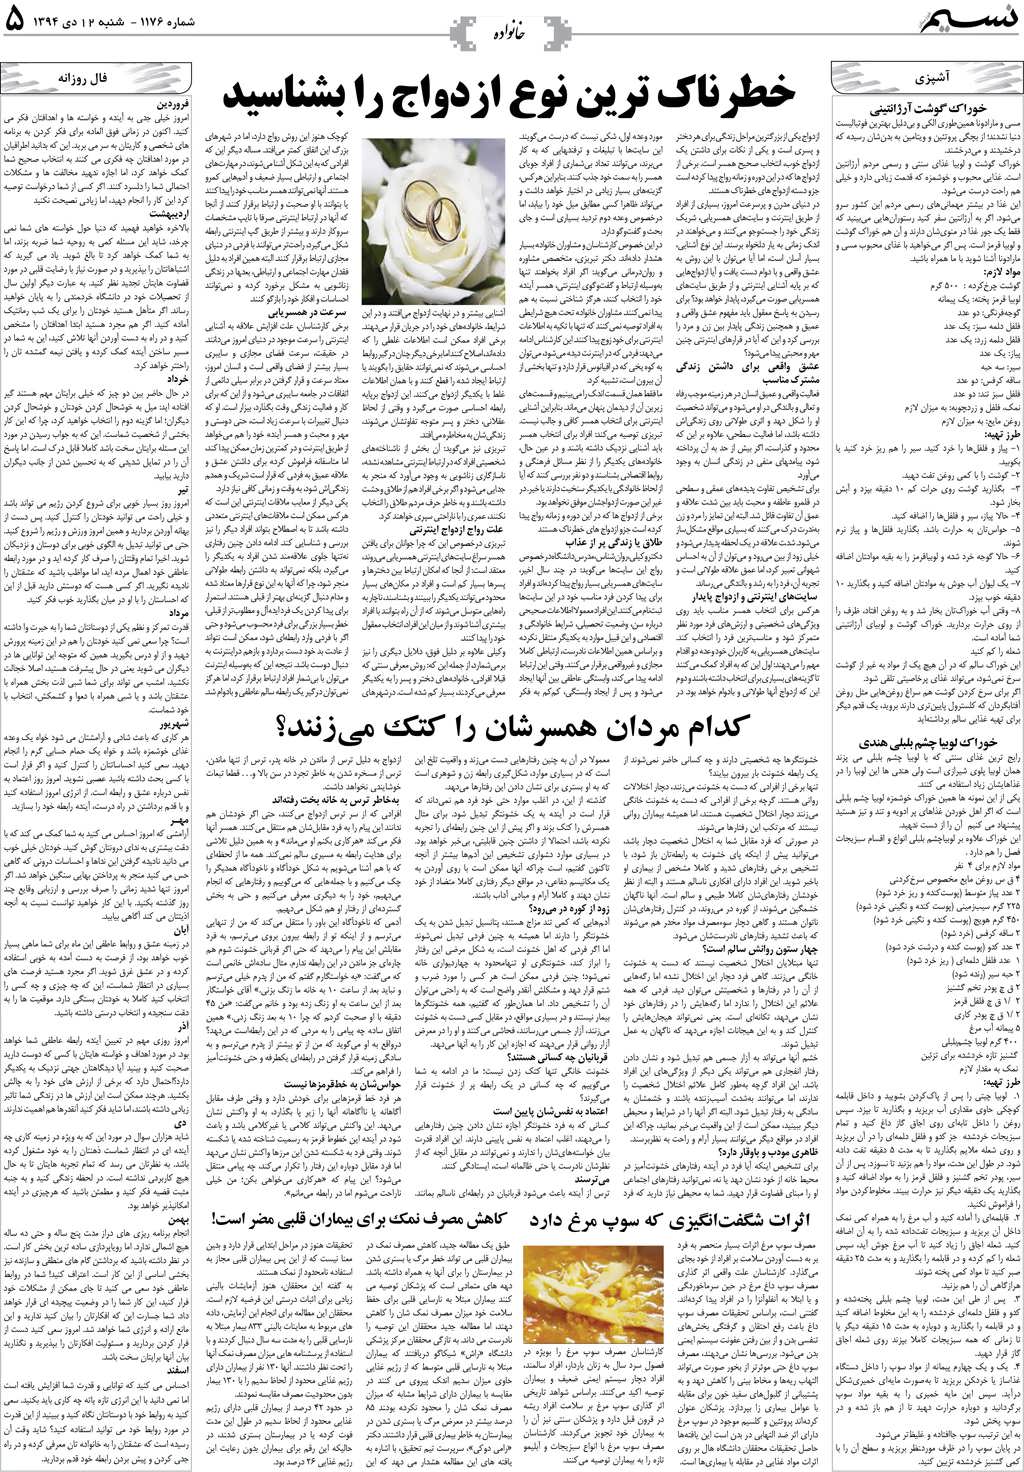 صفحه خانواده روزنامه نسیم شماره 1176